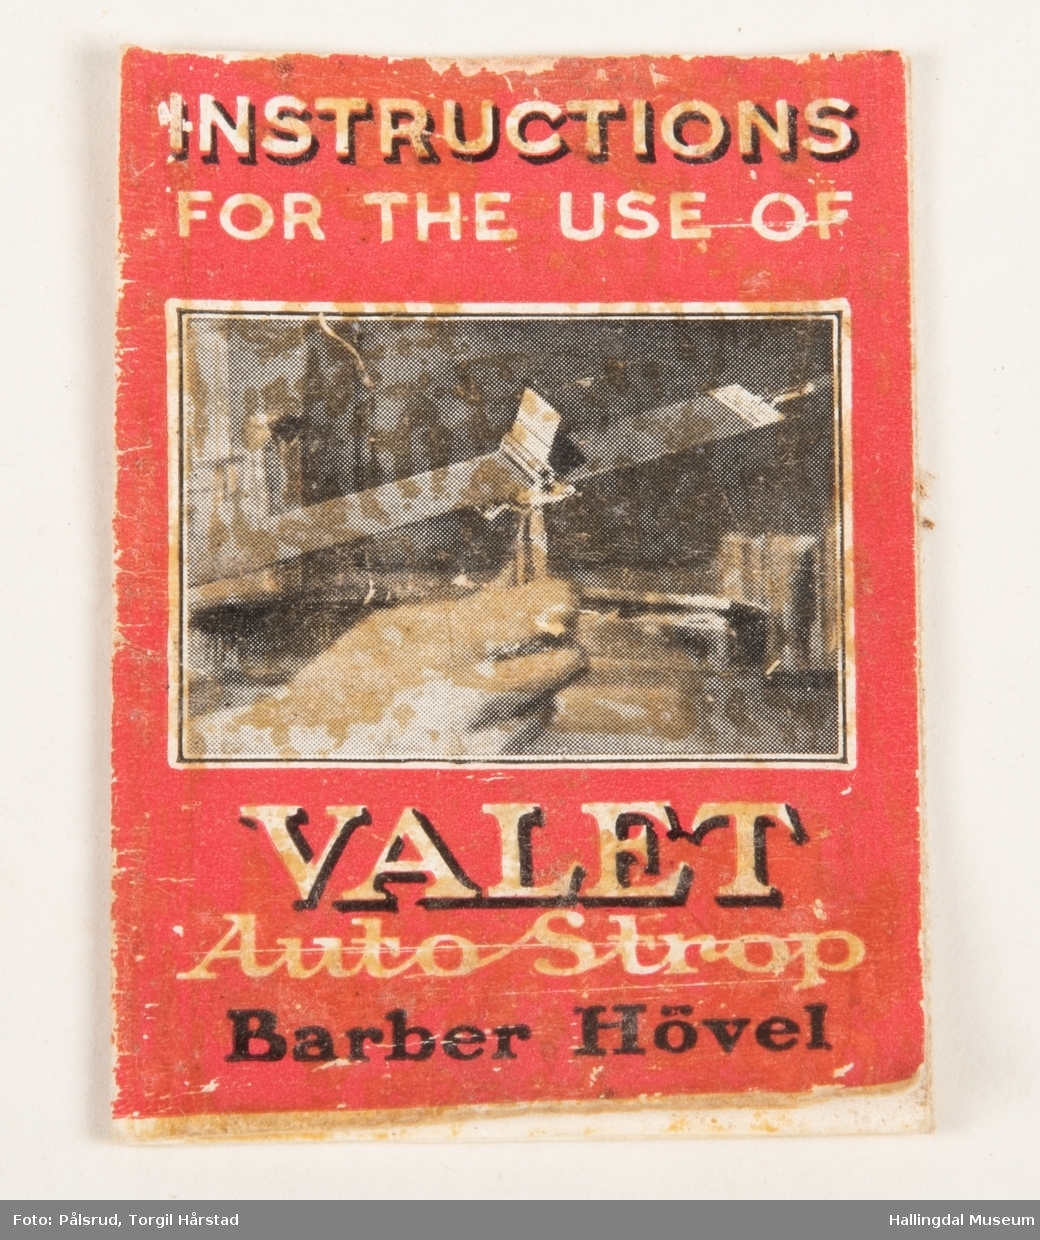 Barberhøvel av merket "Valet" med ekstra barberblader av forskjellige merker, annet tilbehør, to instruksjonsbøker og en informasjonslapp i en liten, brun etuiboks av papp. Produsert av AutoStrop Safety Razor Co.